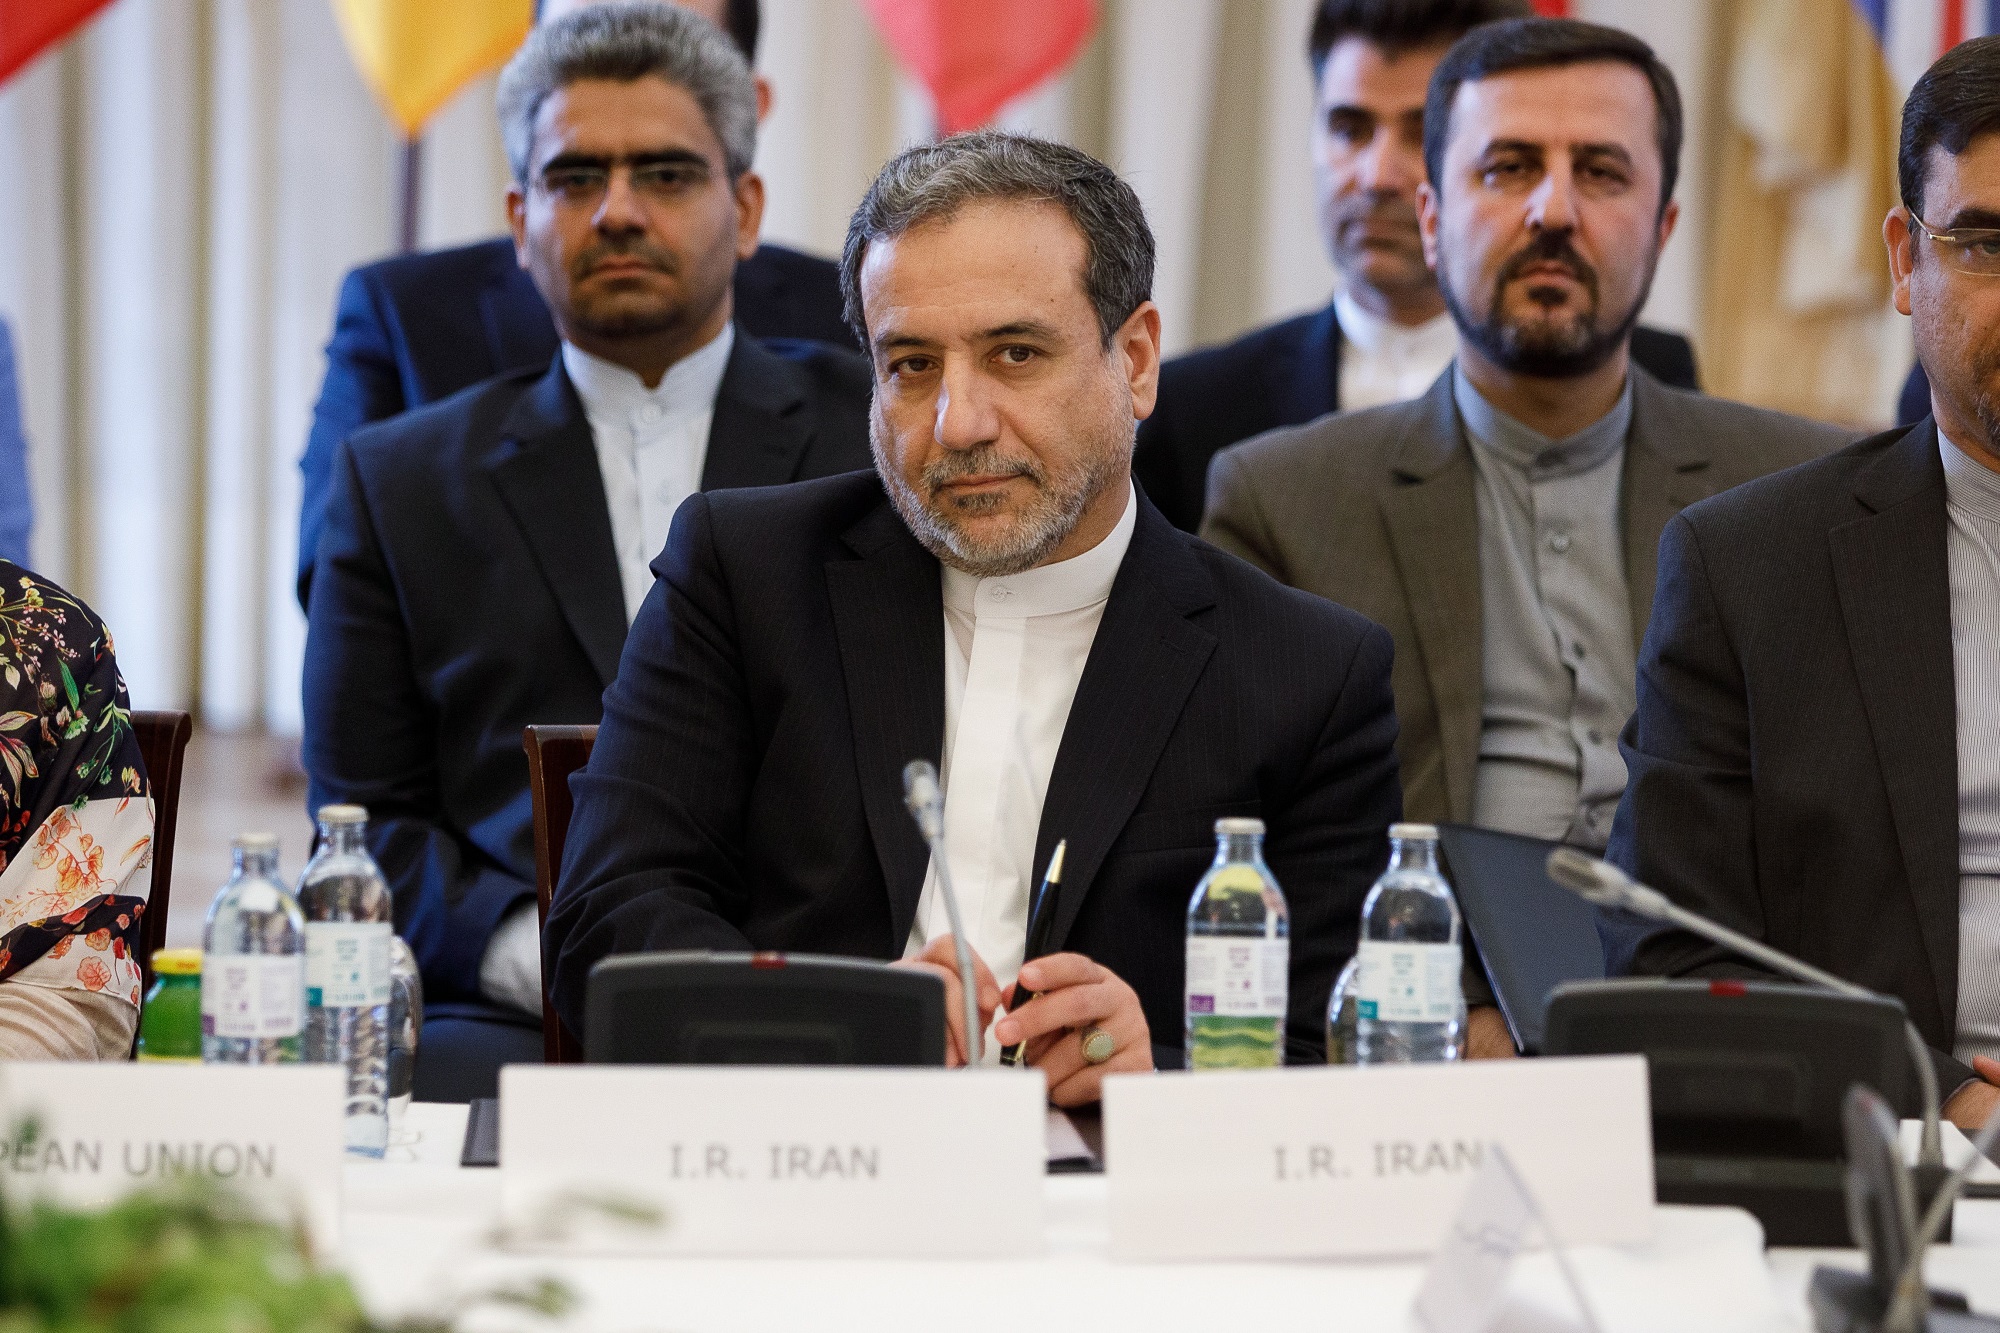 Irán acusa a Londres de violar pacto nuclear reteniendo su buque en Gibraltar